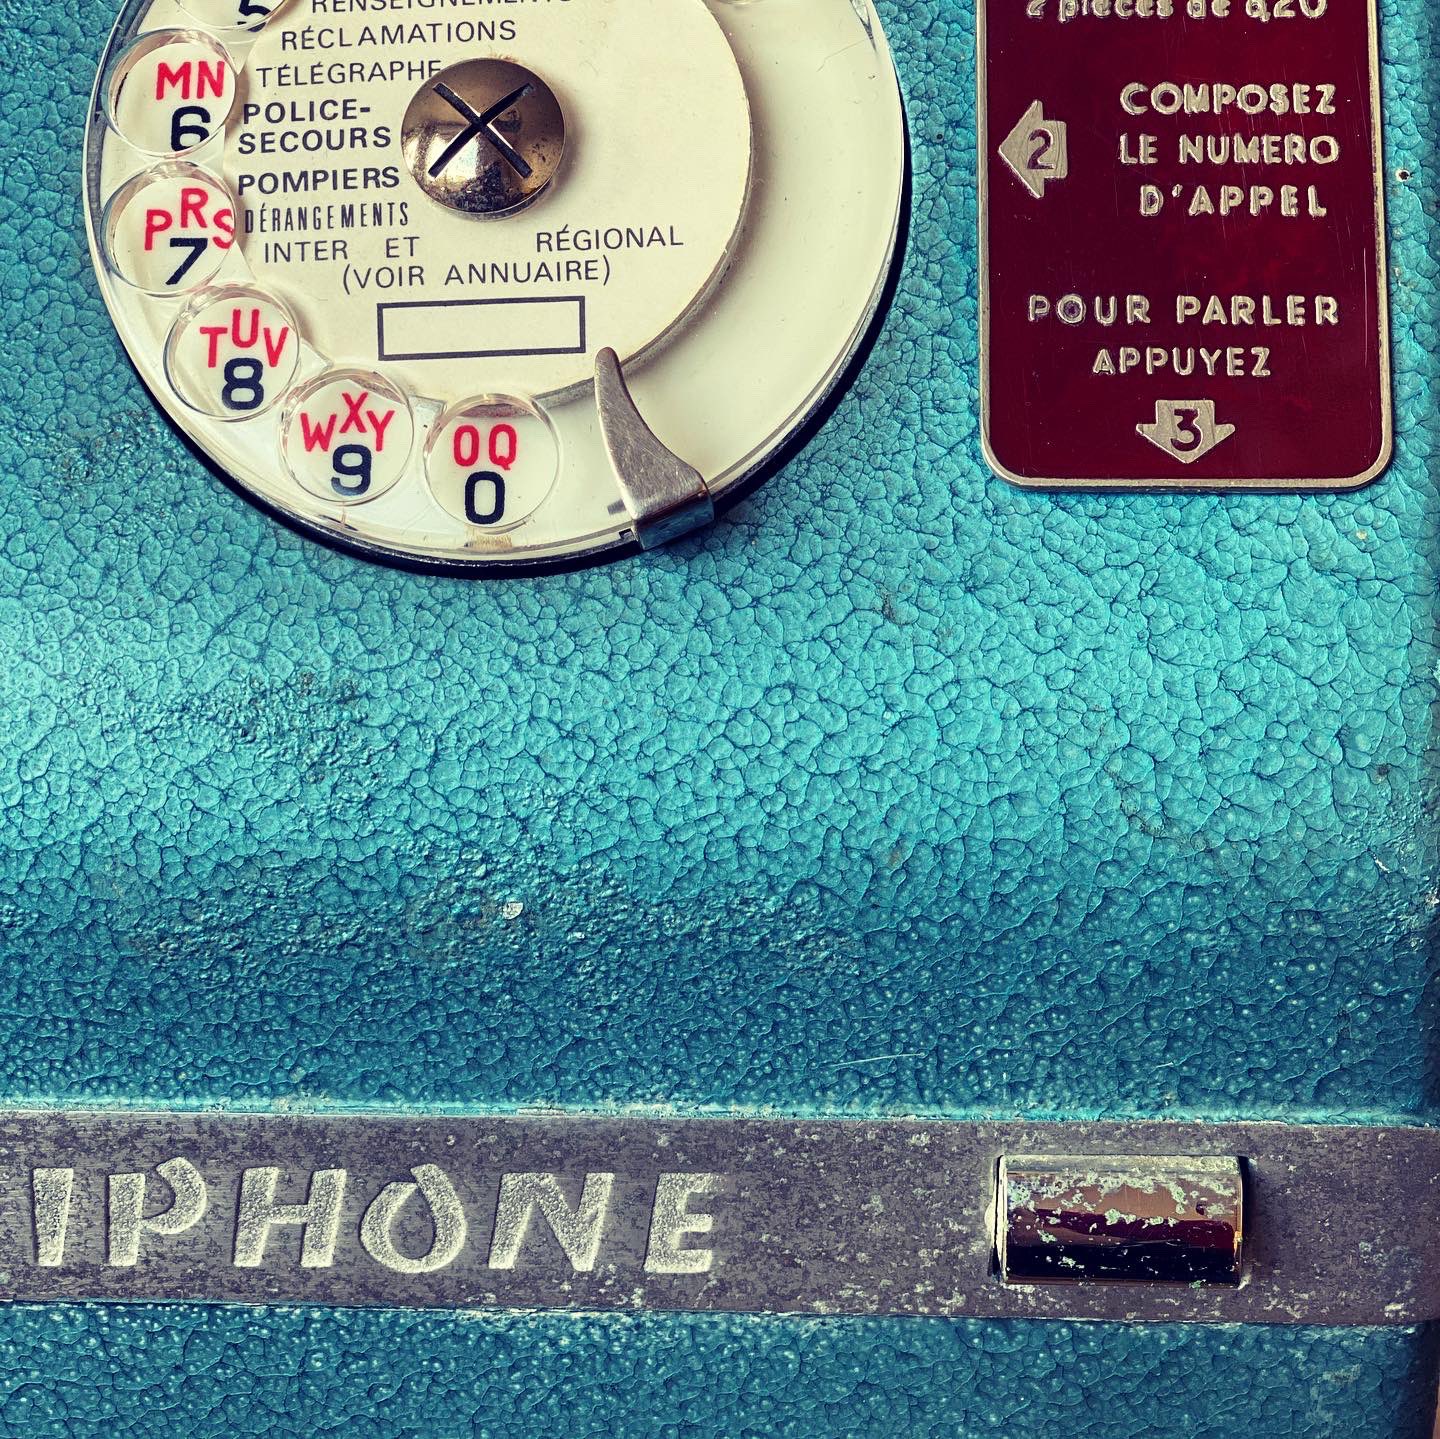 les socotel S63 dispos - telephone vintage retro : choisissez le vôtre